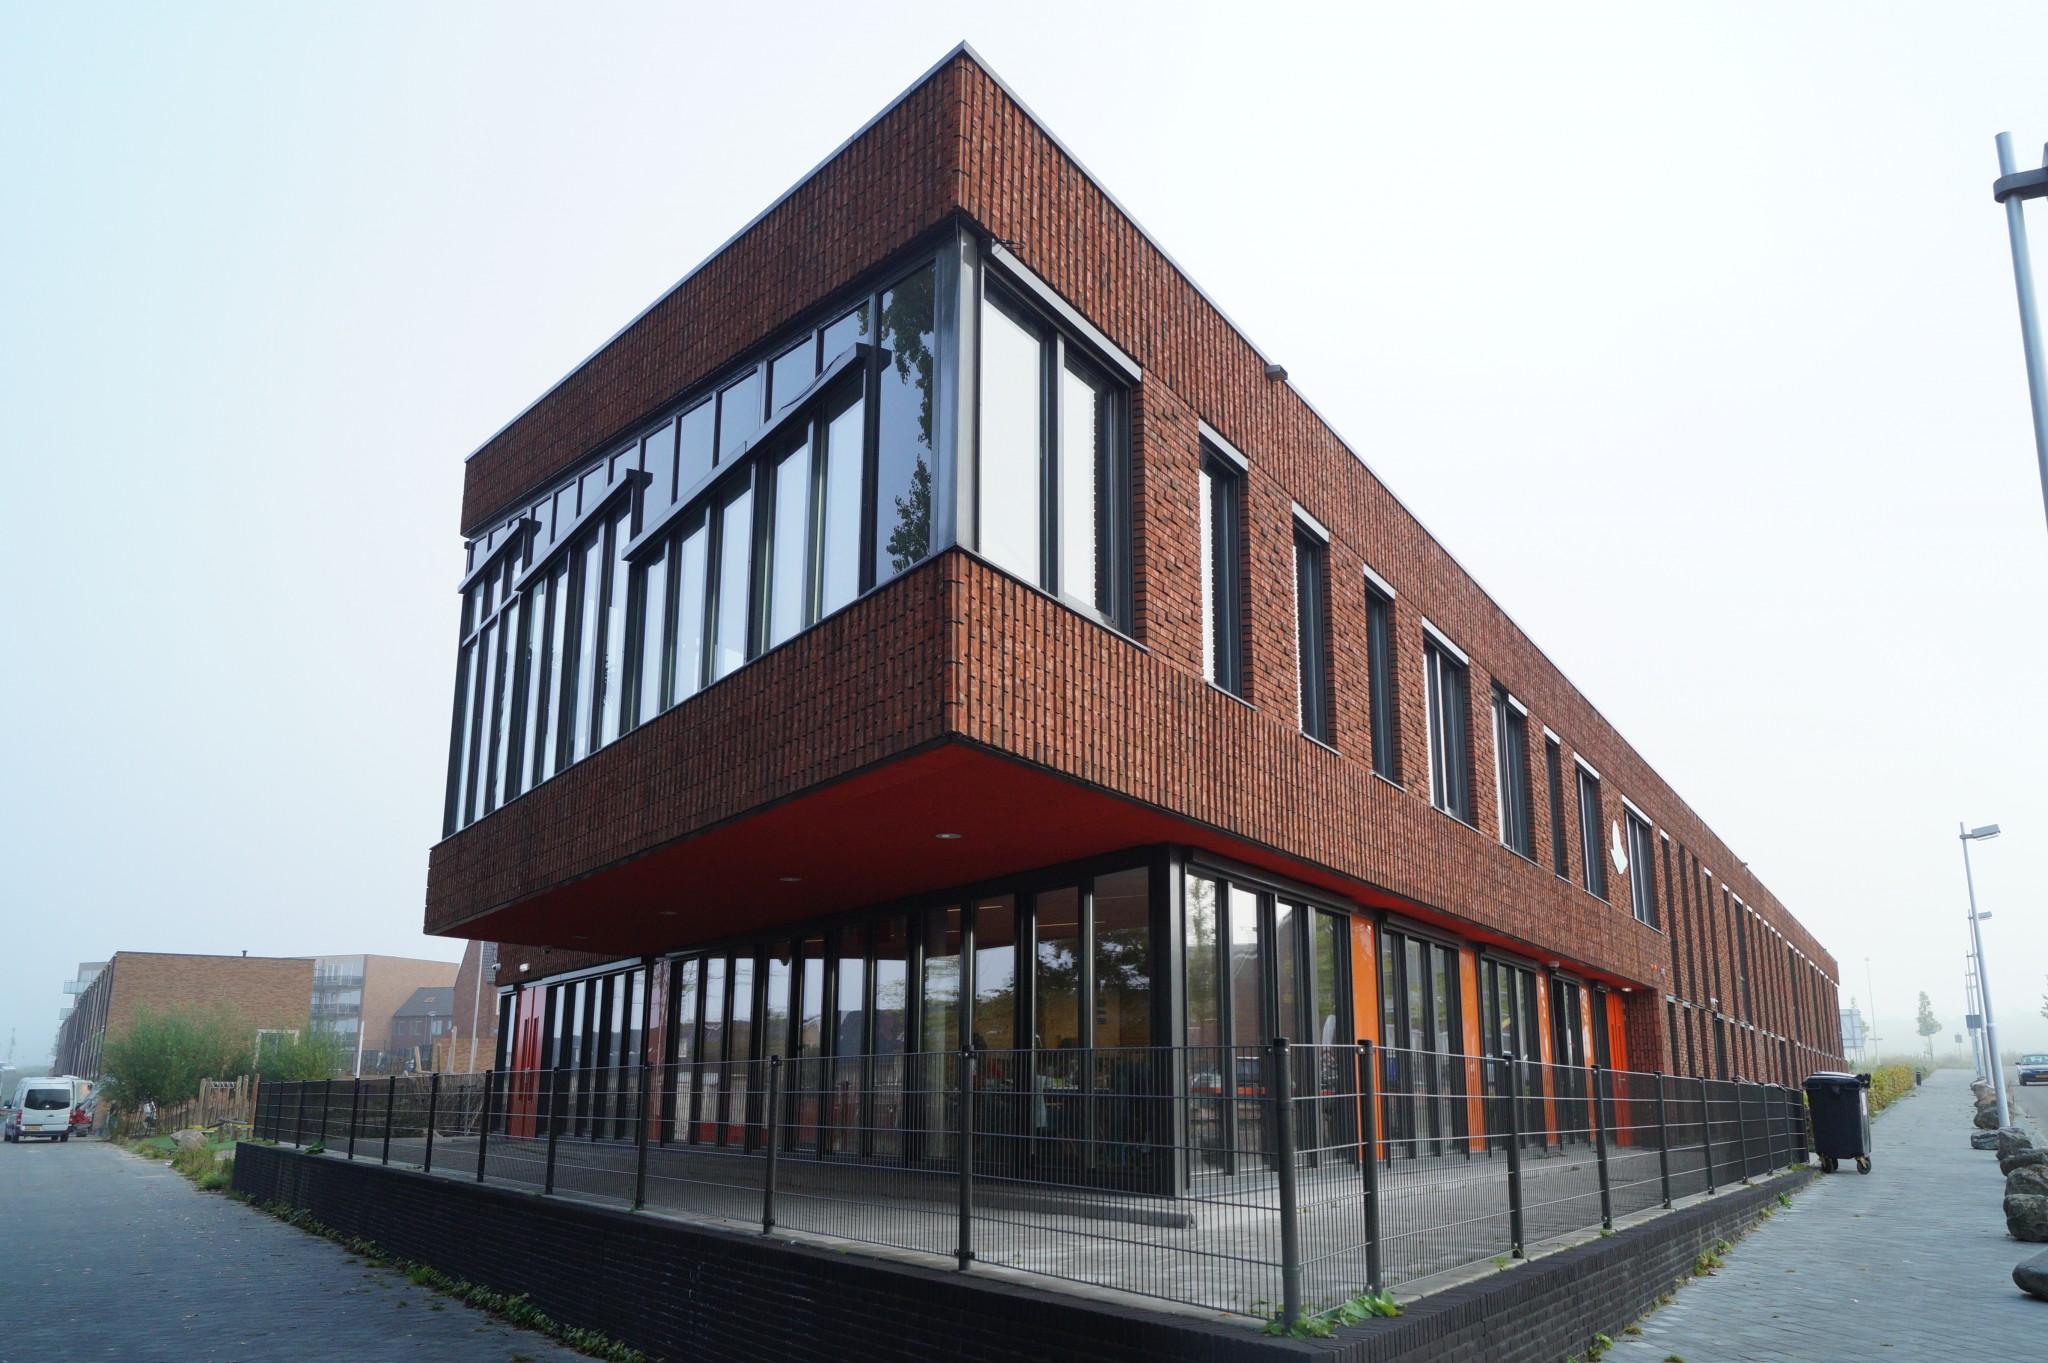 Nieuwbouw schoolgebouw ‘Op de groene alm’ Utrecht